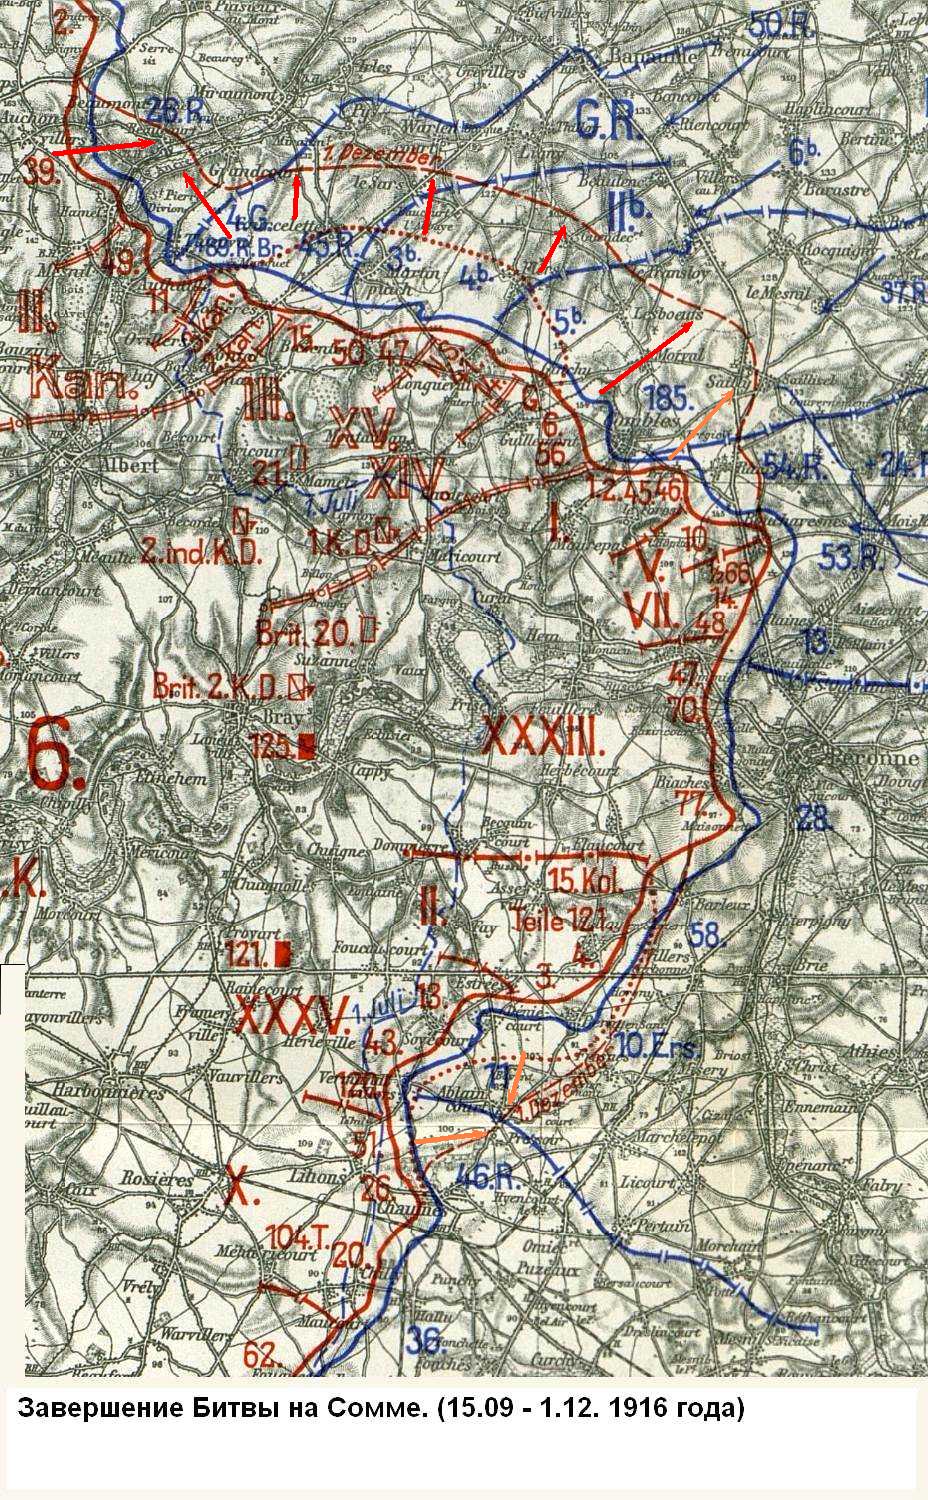 Общая схема третьего и четвертого этапов Битвы на Сомме. Положение сторон на 15 сентября 1916 года.